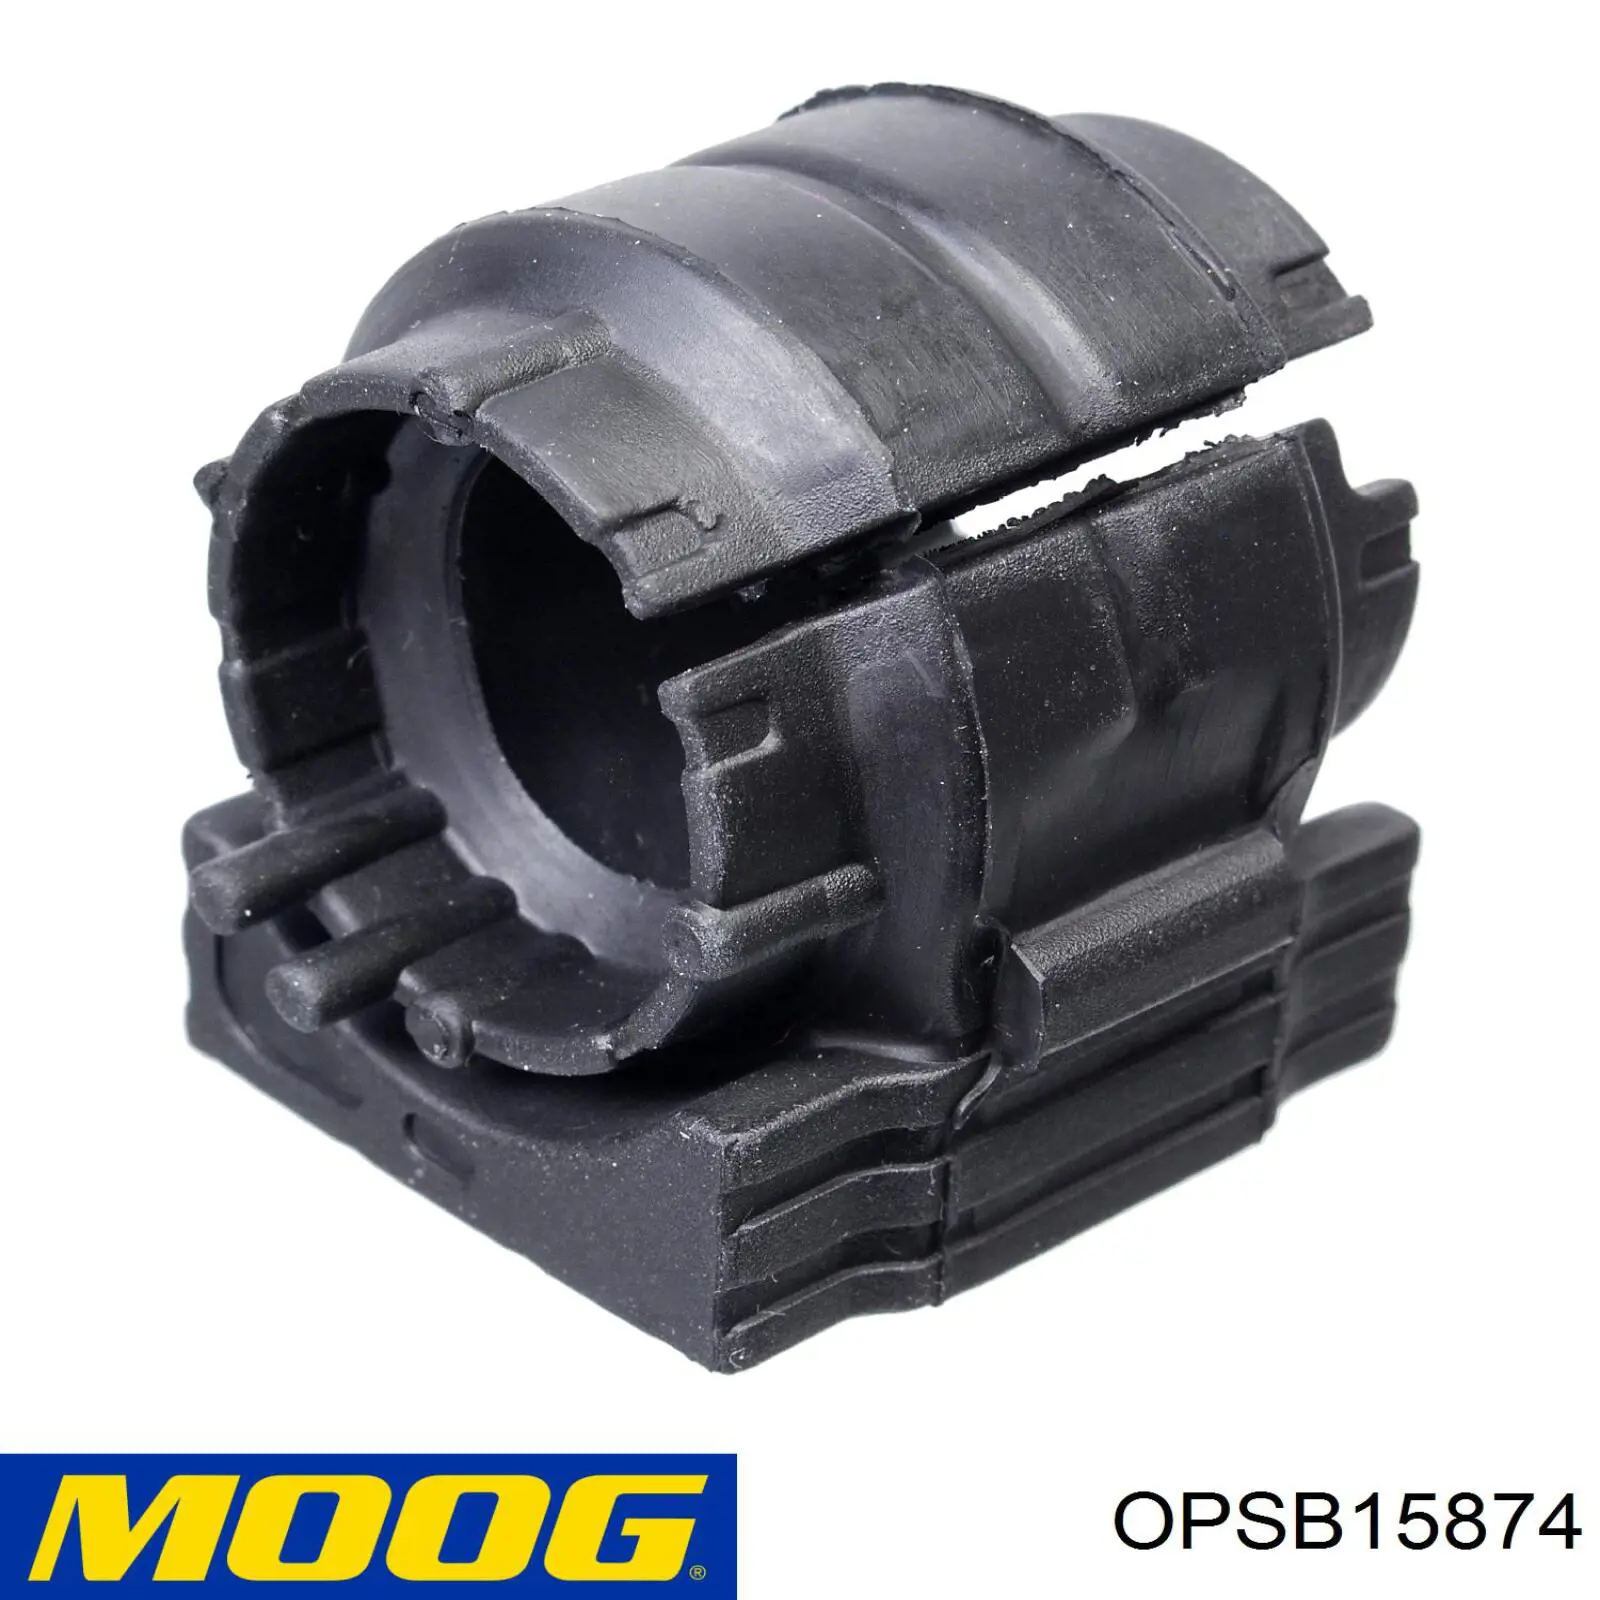 OP-SB-15874 Moog bucha de estabilizador traseiro